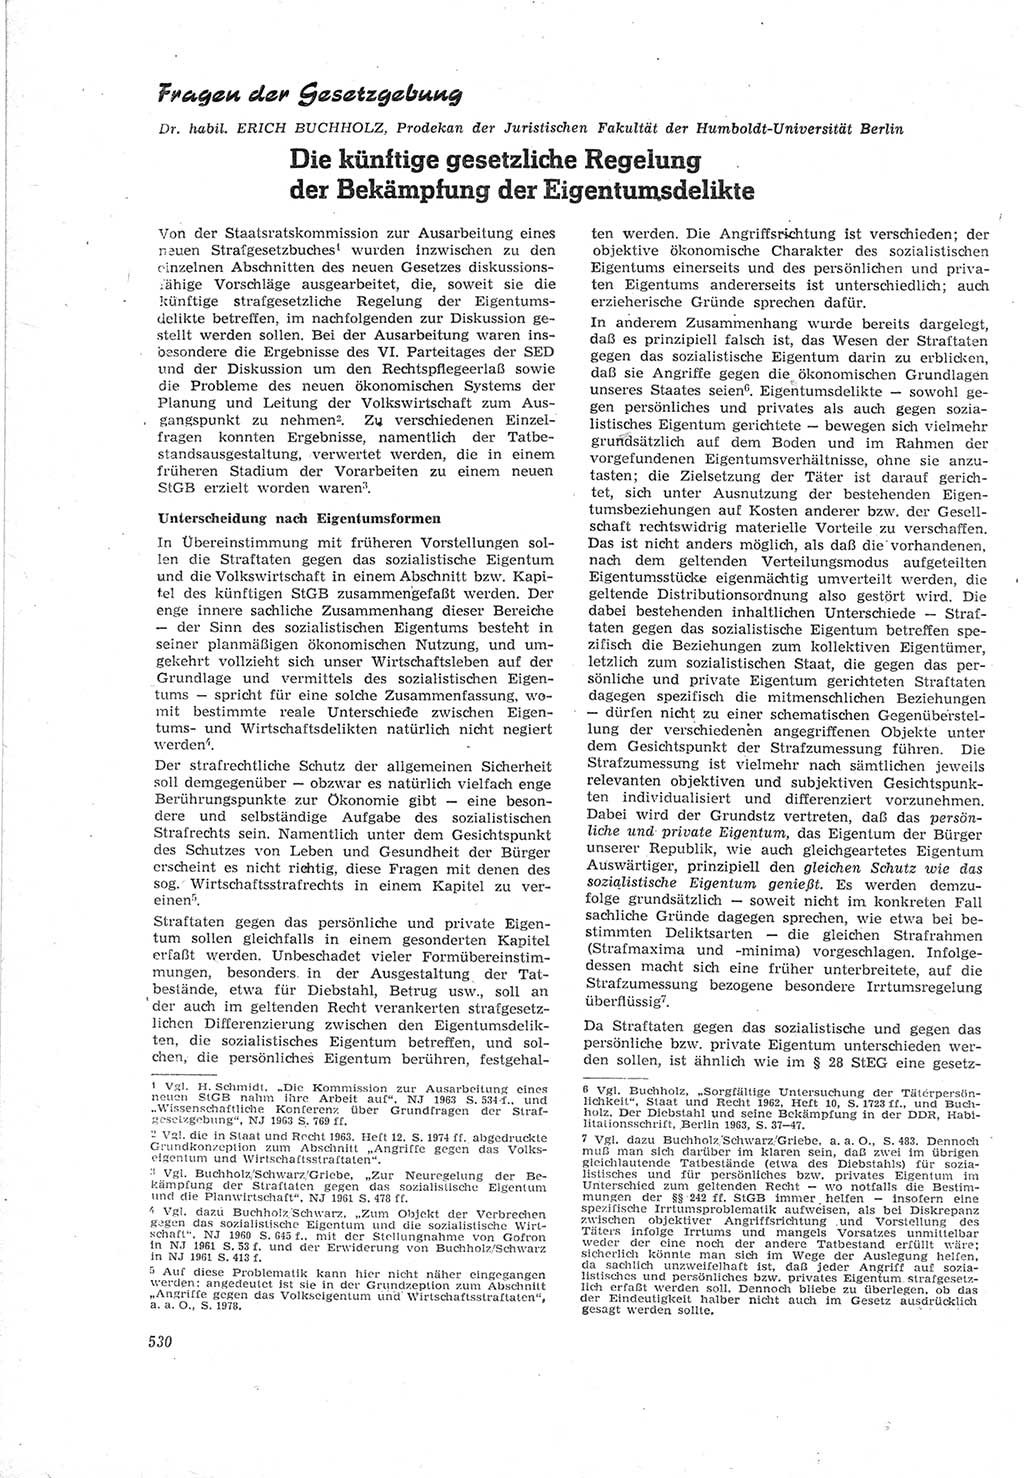 Neue Justiz (NJ), Zeitschrift für Recht und Rechtswissenschaft [Deutsche Demokratische Republik (DDR)], 18. Jahrgang 1964, Seite 530 (NJ DDR 1964, S. 530)